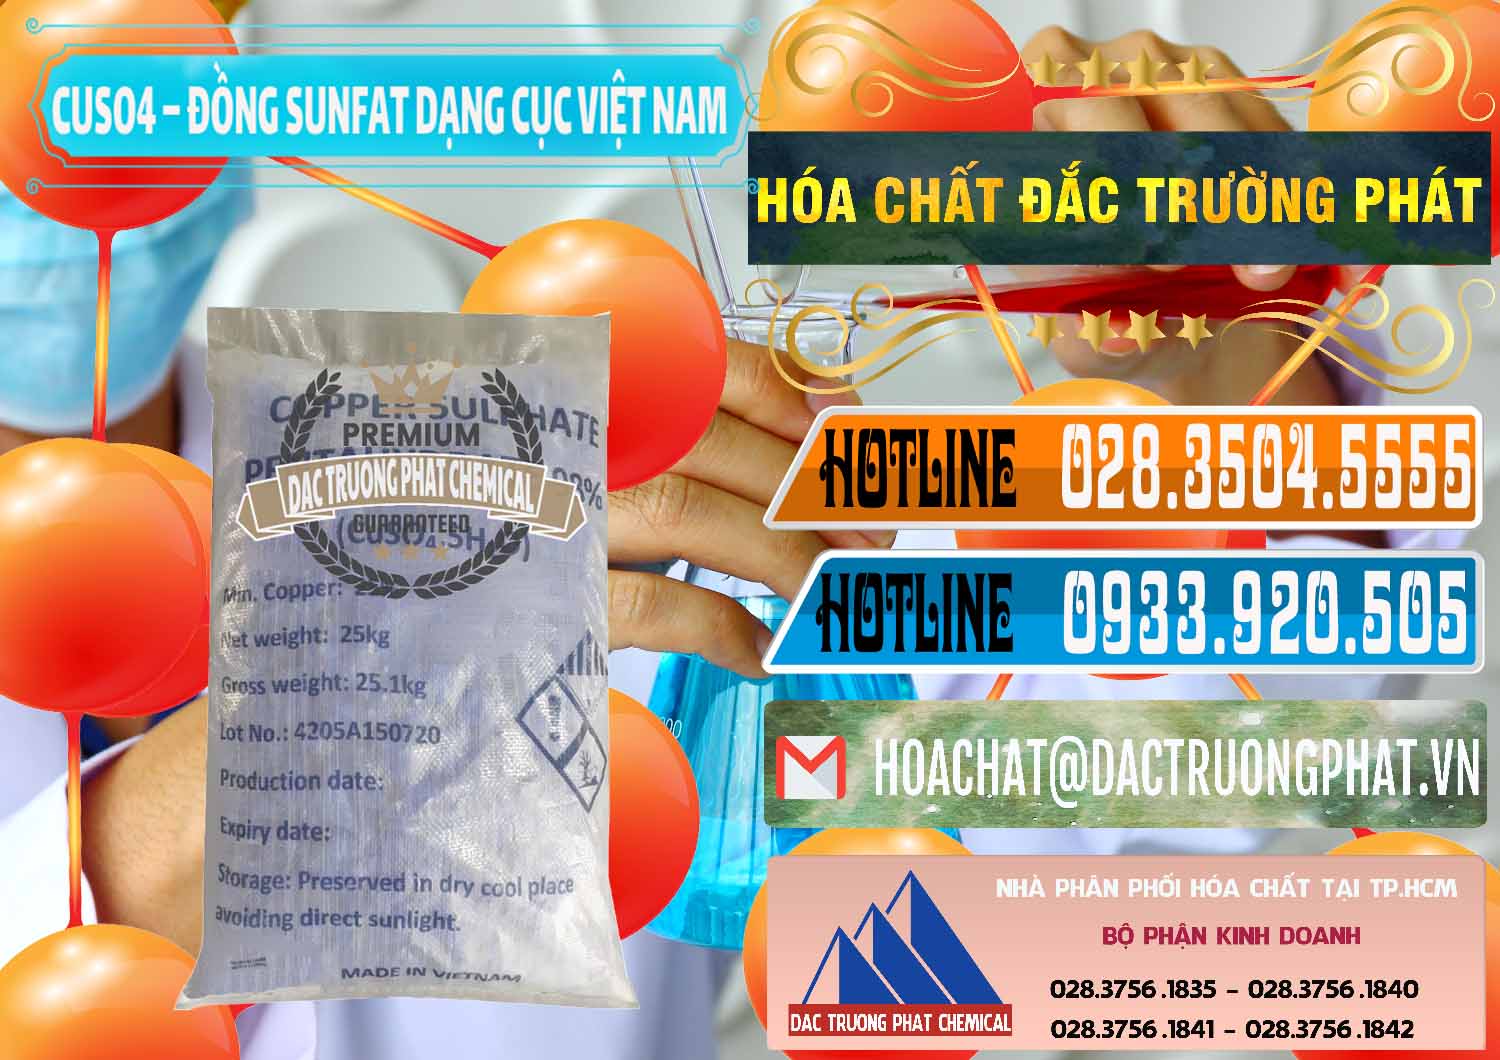 Công ty chuyên cung cấp và kinh doanh CUSO4 – Đồng Sunfat Dạng Cục Việt Nam - 0303 - Chuyên cung cấp & kinh doanh hóa chất tại TP.HCM - stmp.net